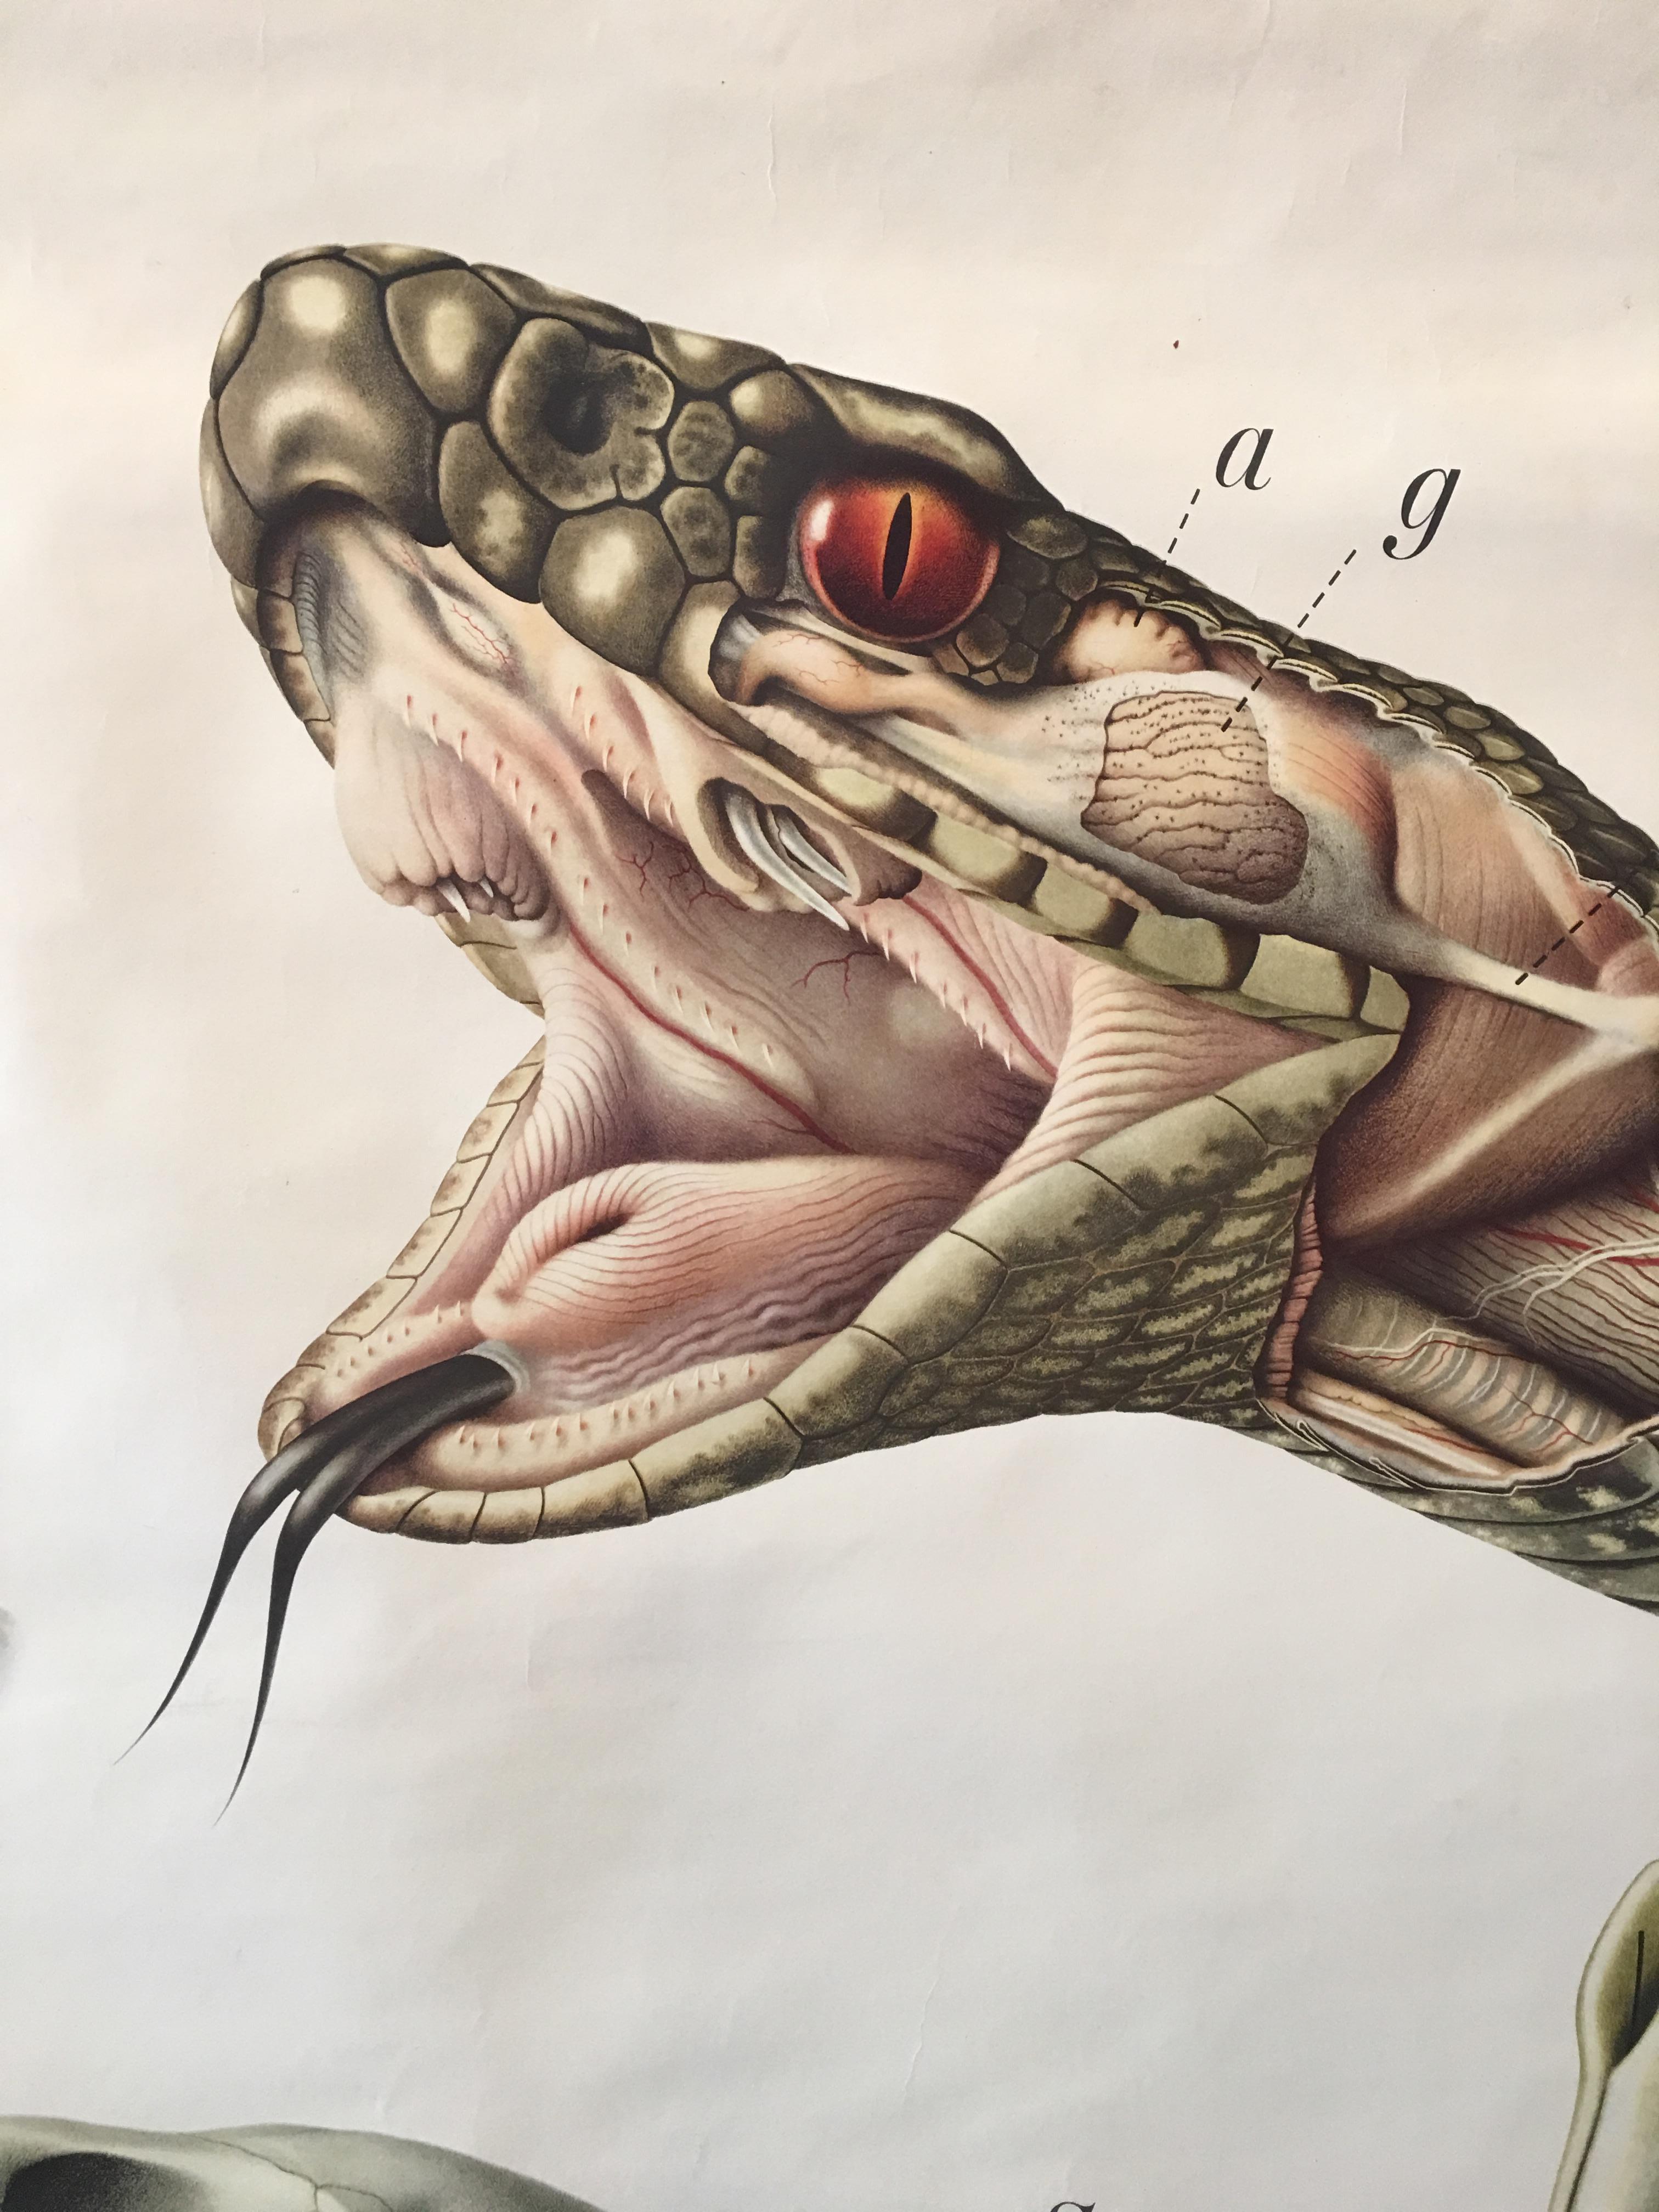 Originales wissenschaftliches Diagramm eines Schlangenkopfes mit Kieferknochen und Reißzahndetails 

Abmessungen: 127 cm x 95 cm (50 x 37 Zoll)

Bei dieser wissenschaftlichen Karte handelt es sich um eine Original-Papierrolle mit einer